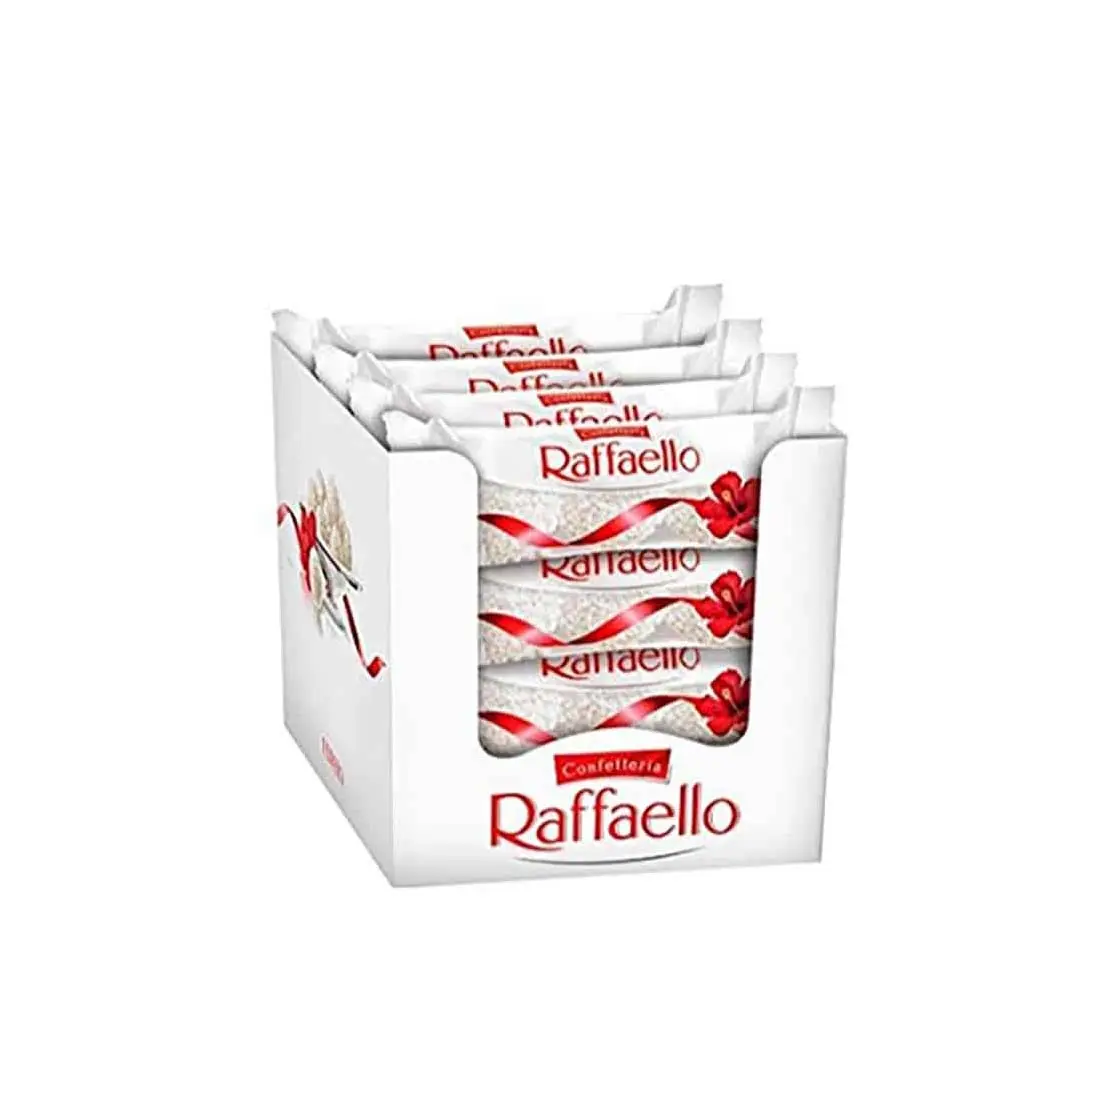 Ferrero Collection Gift Box, 32 Count, Rondnoir, Rocher and Raffaello